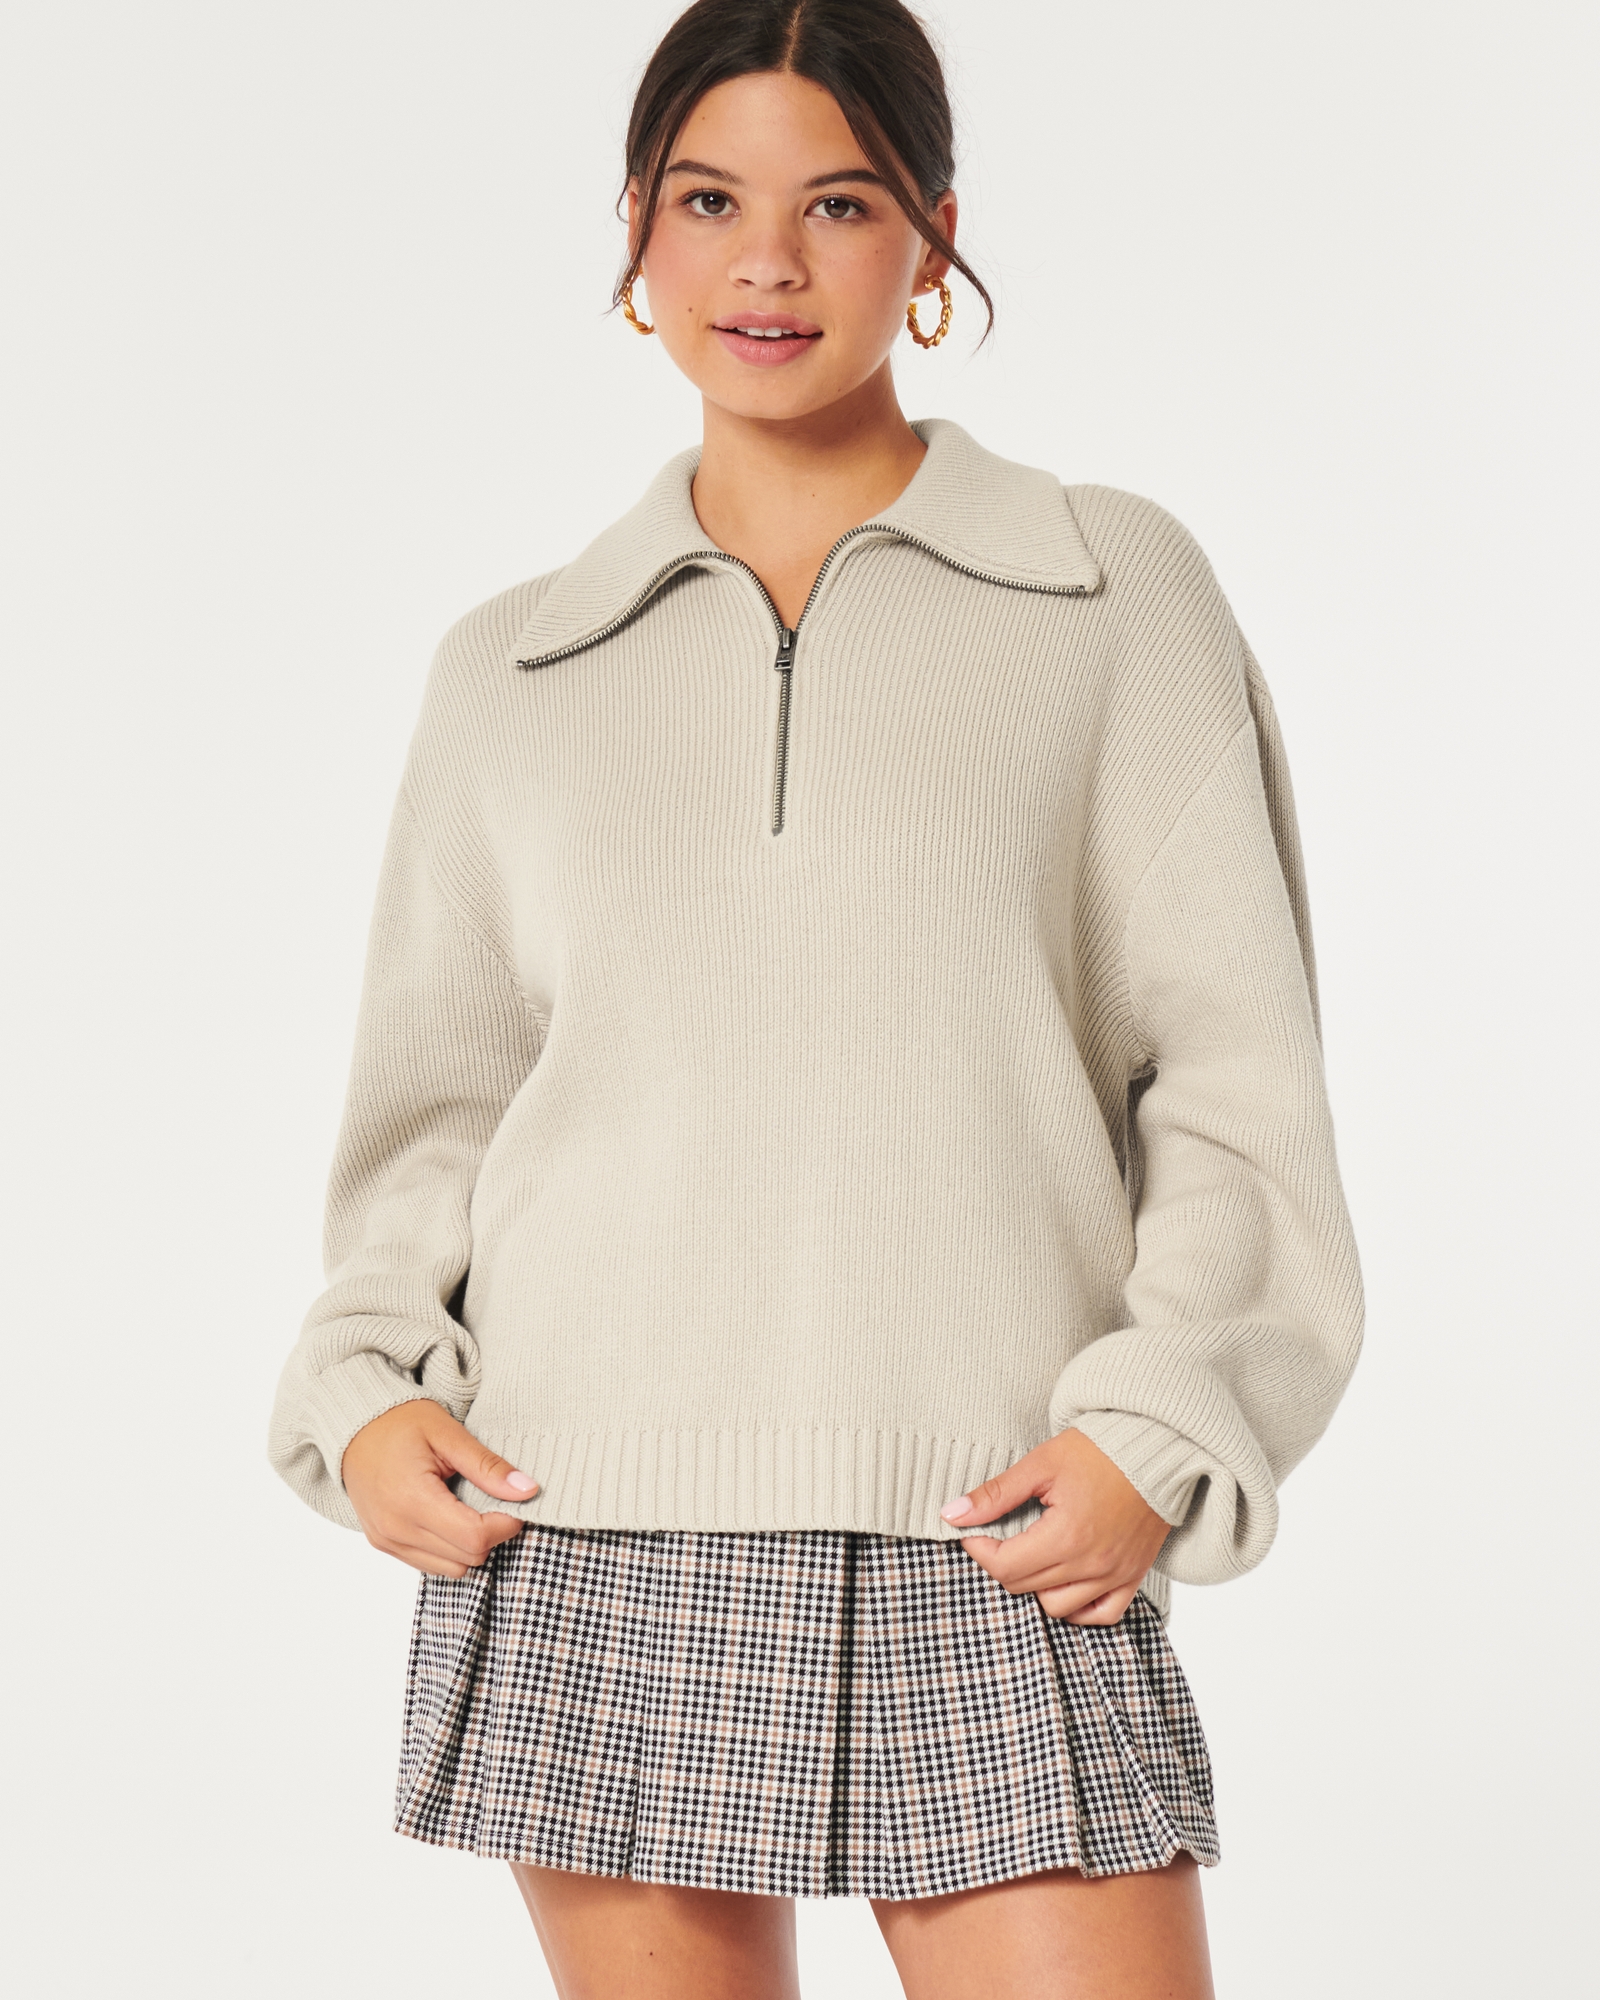 Women's Oversized Half-Zip Sweater